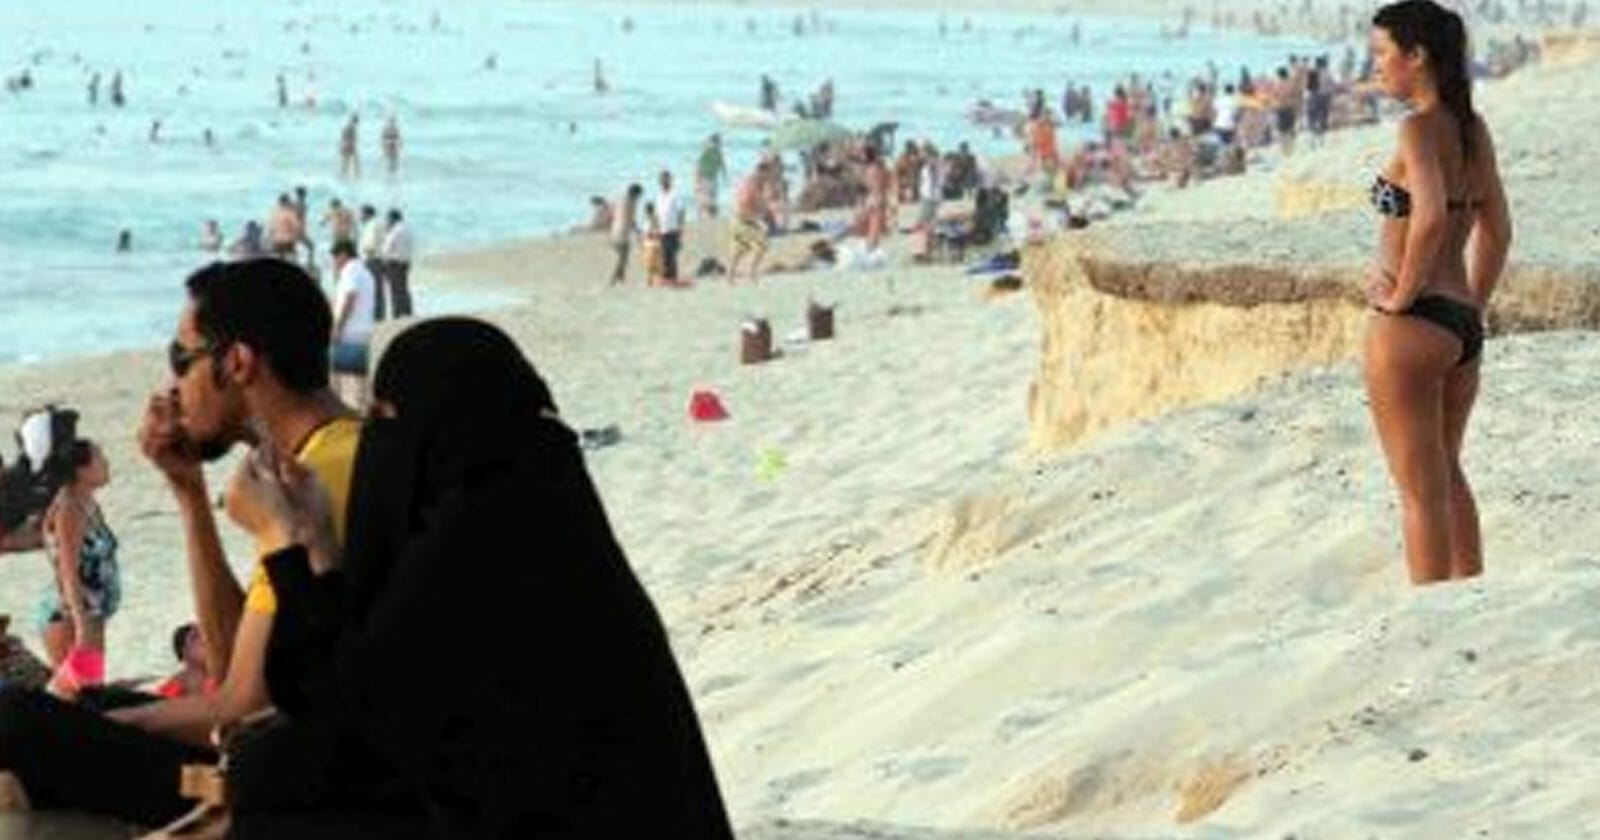 السعودية تسمح لجميع النساء بارتداء البكيني على شواطئ البحر الأحمر watanserb.com